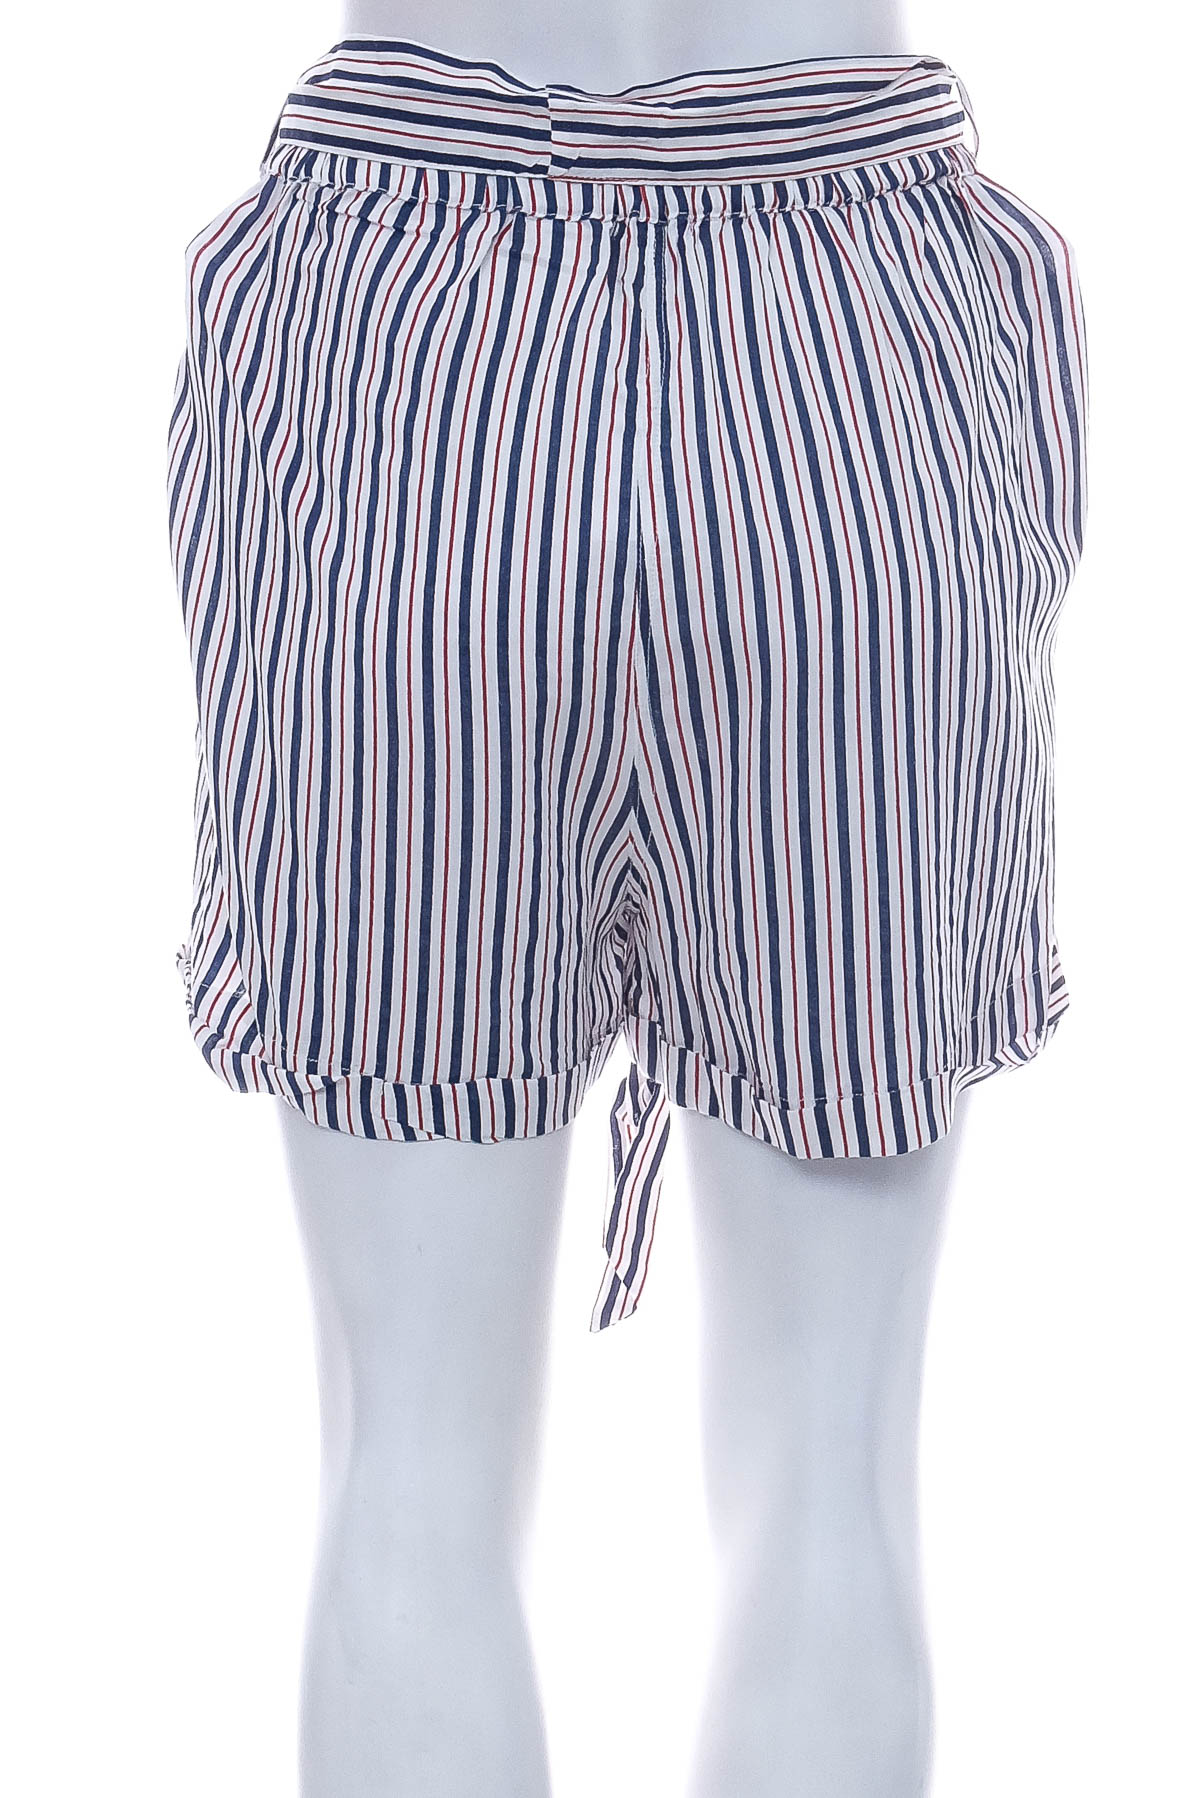 Krótkie spodnie damskie - Inspired by Veritas - 1